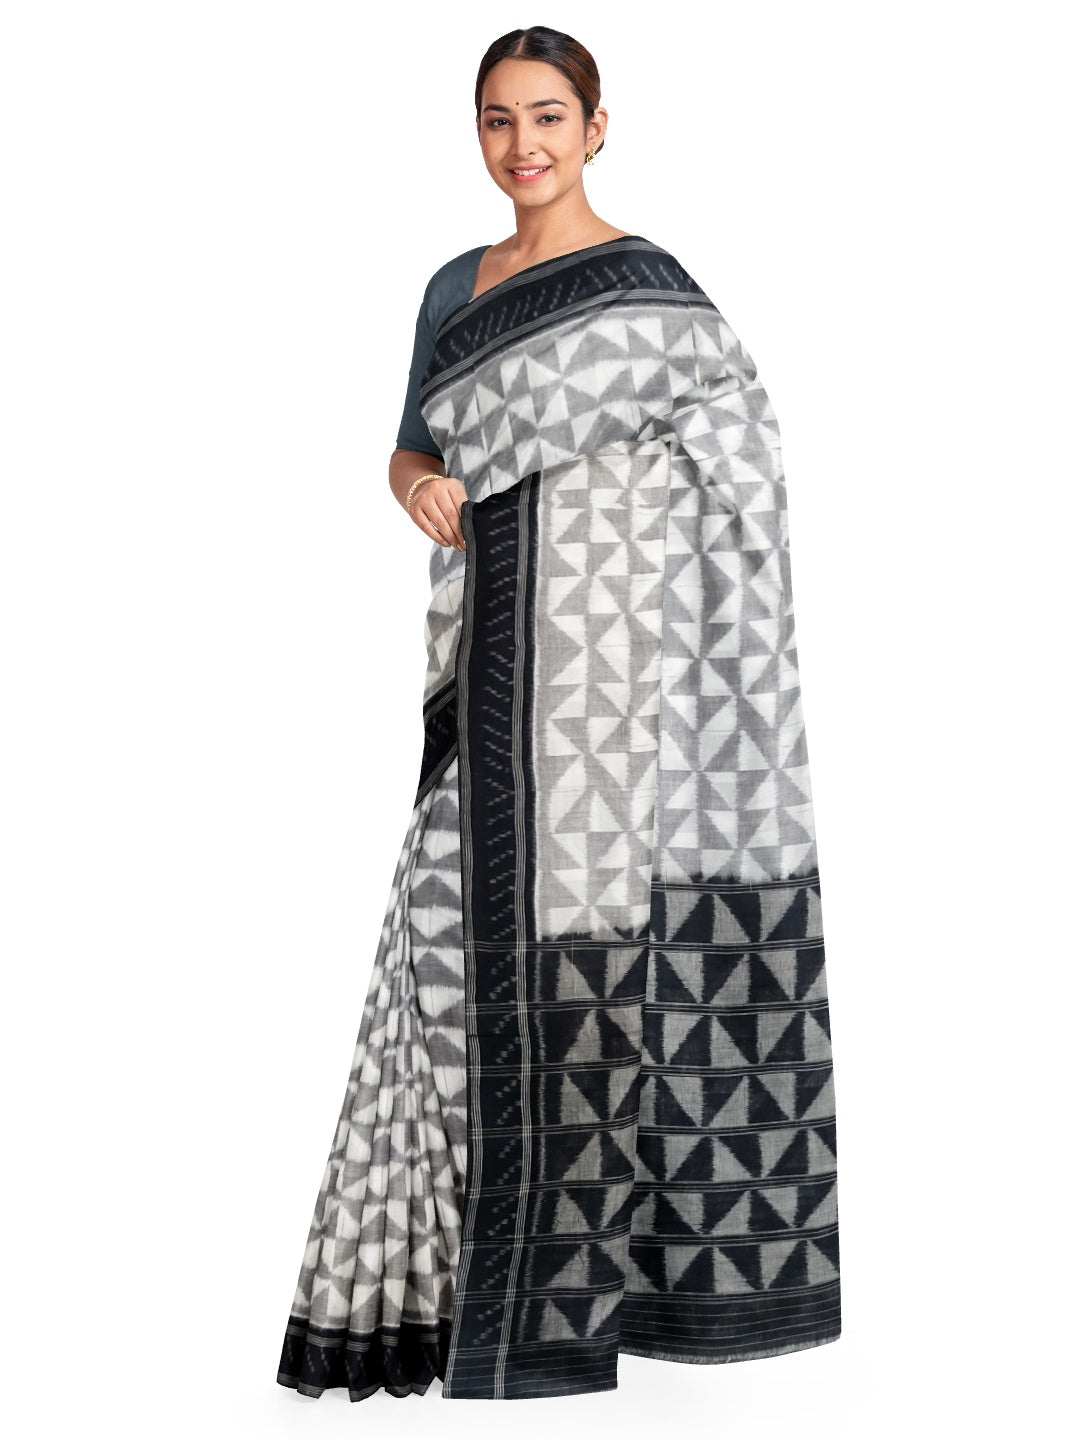 White and black Odisha ikat saree with geometric pattern woven motifs